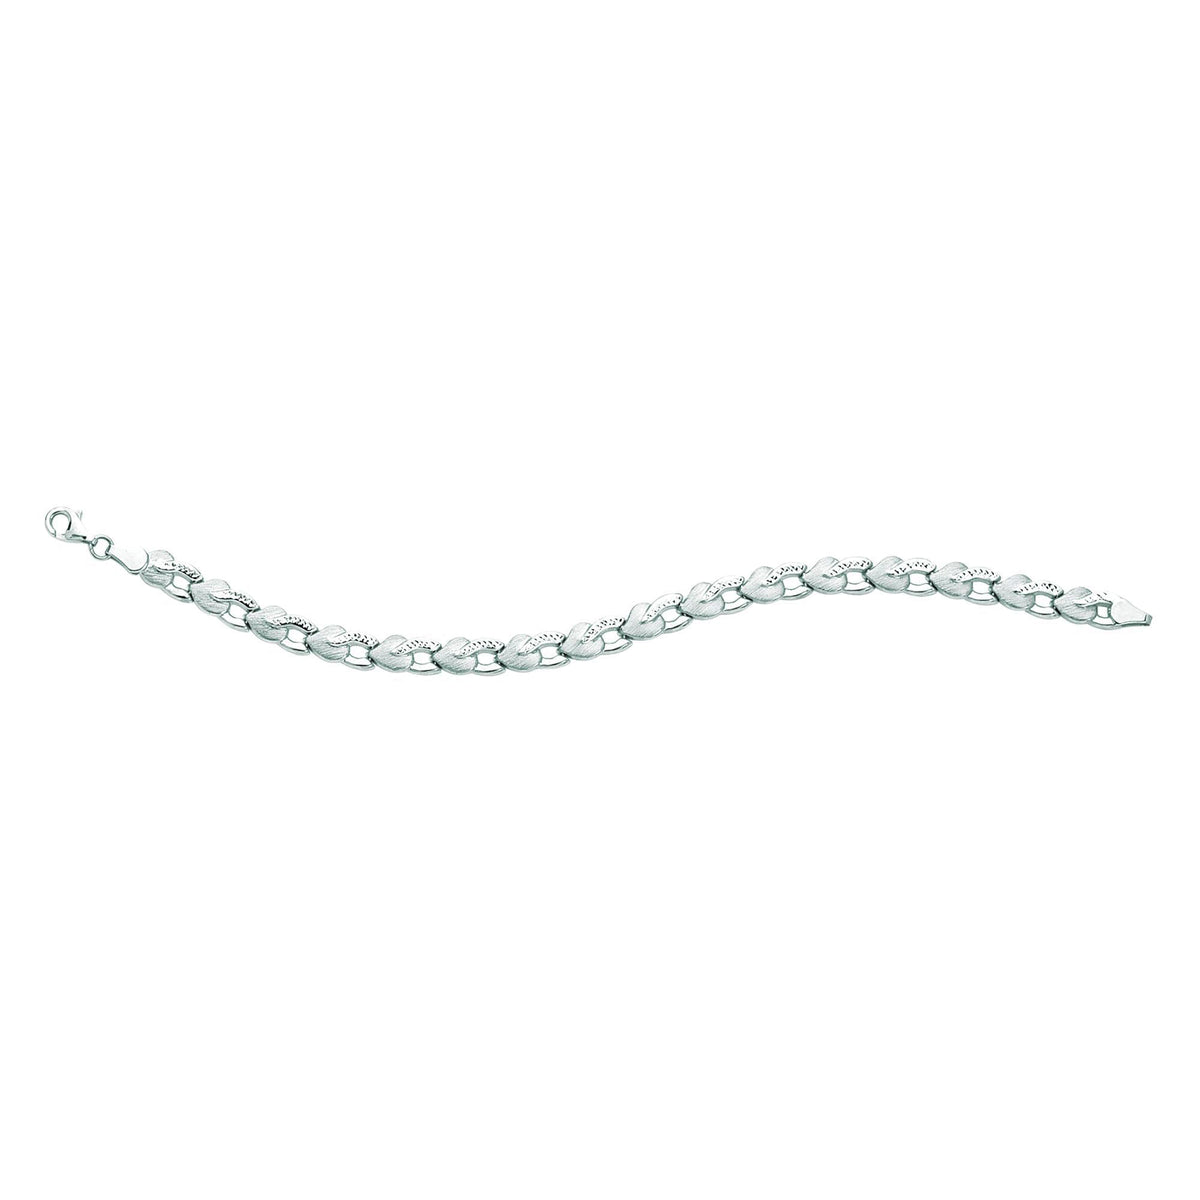 14k White Diamond Cut Heart Shapes Links Bracelet, 7.25" fine designer jewelry for men and women